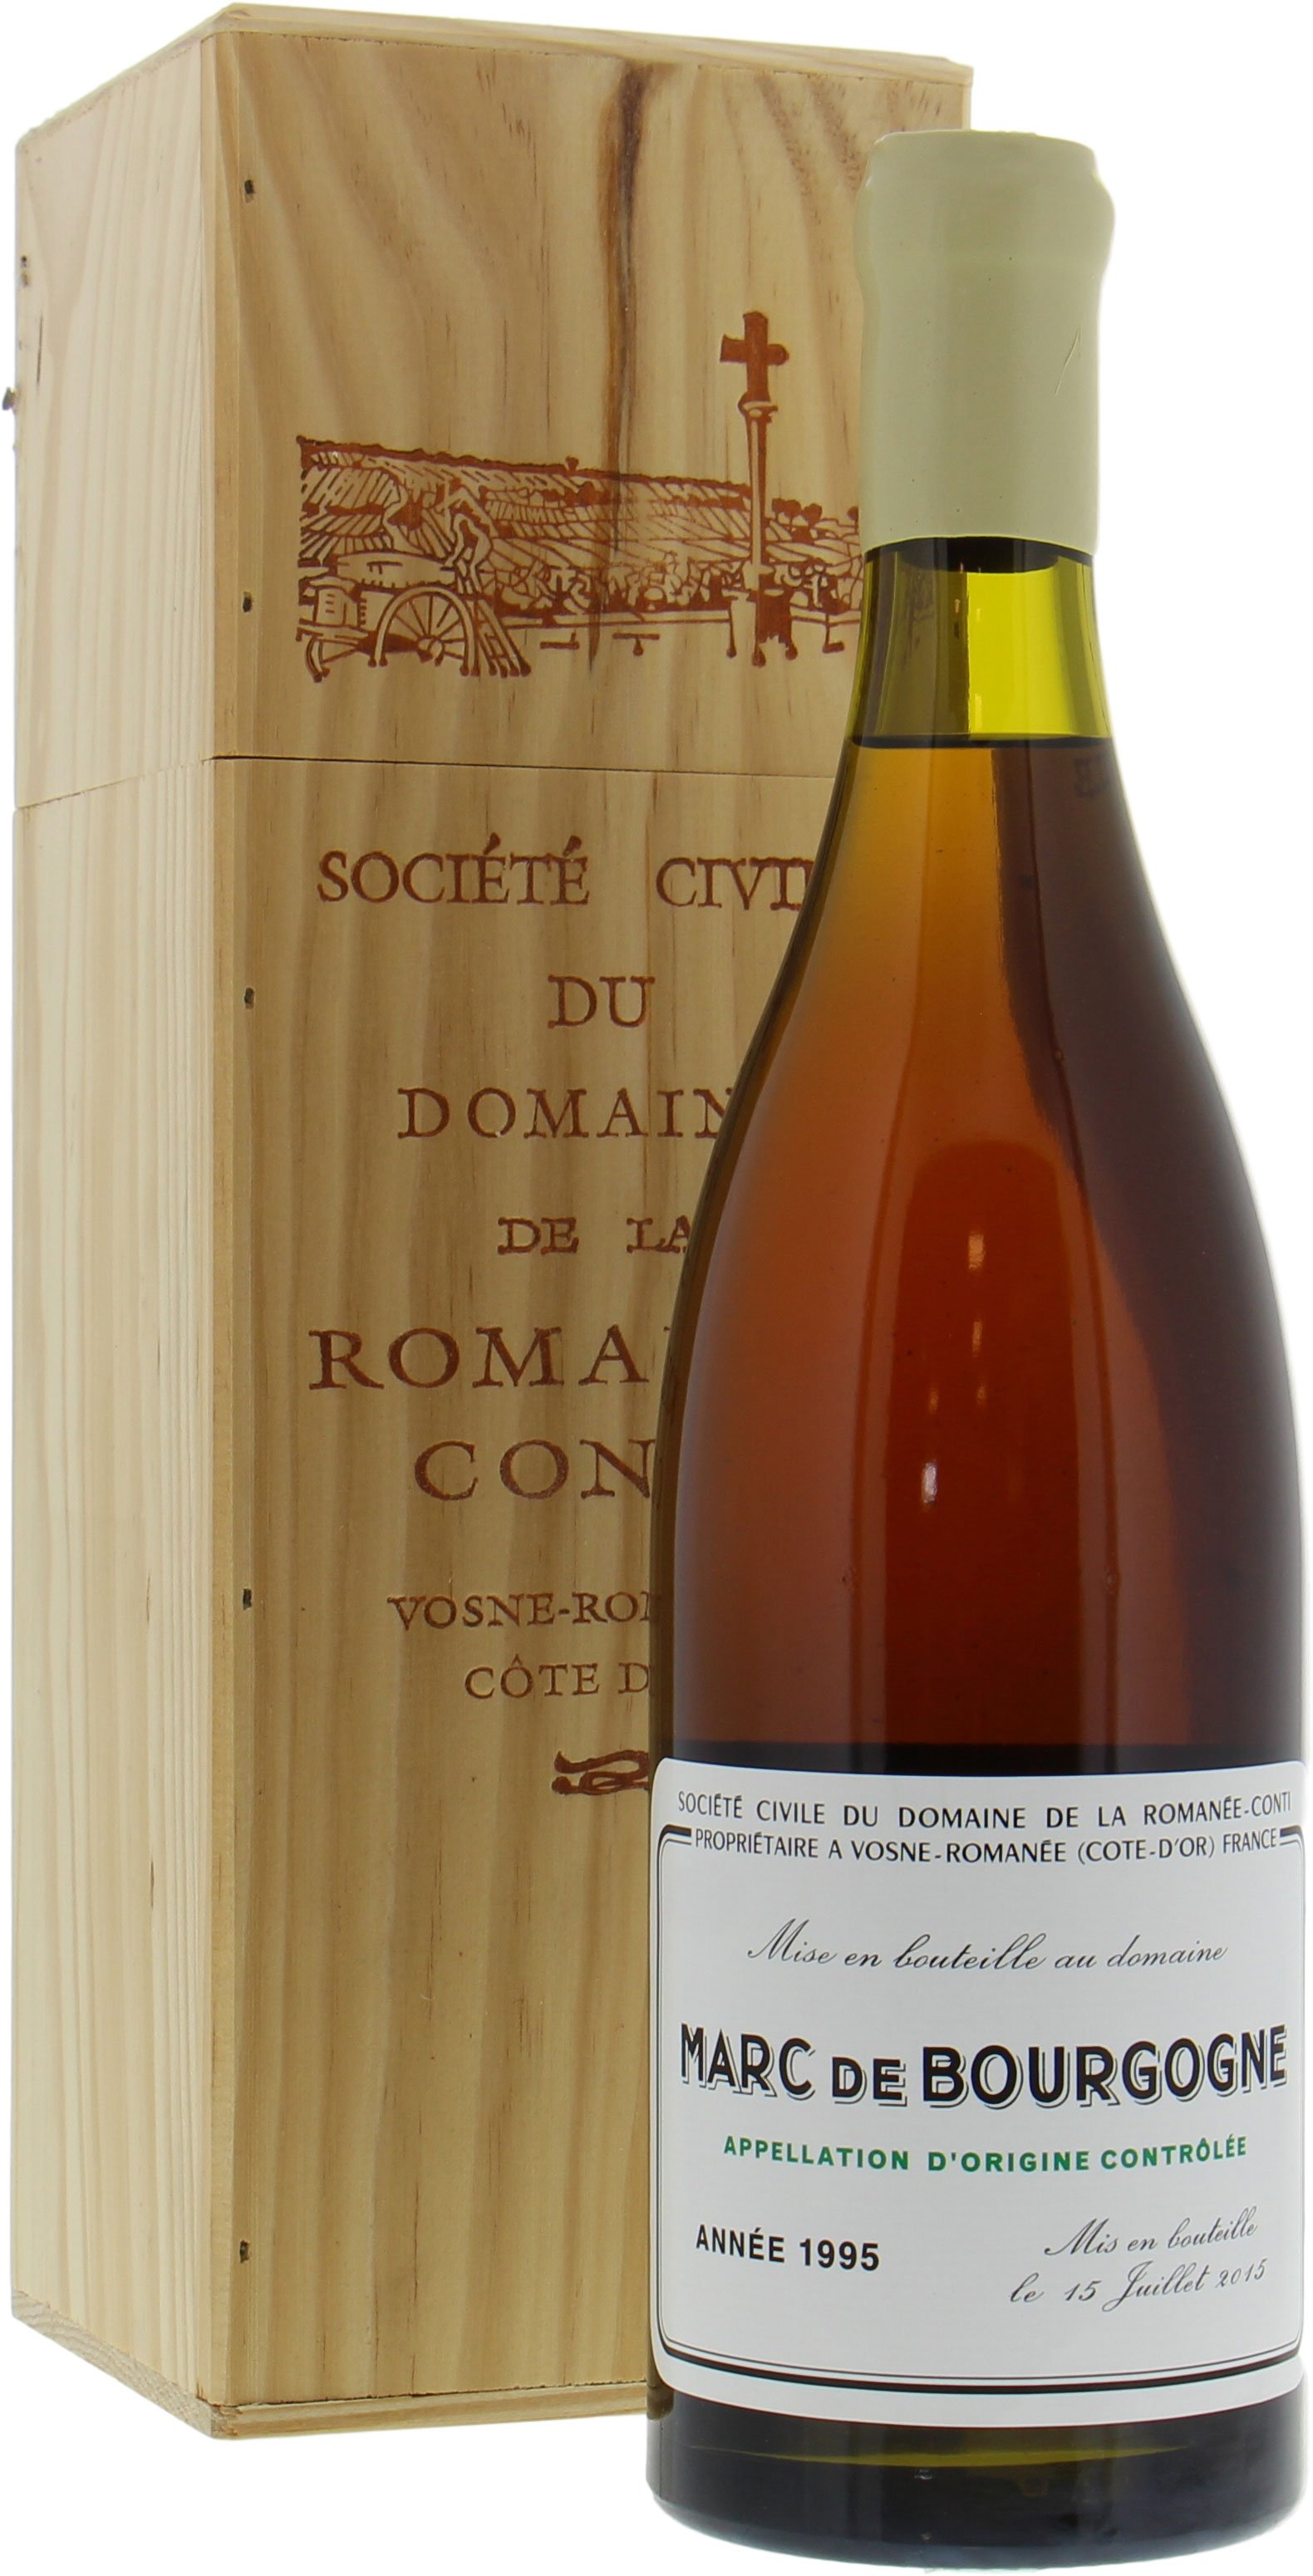 Domaine de la Romanee Conti - Marc de Bourgogne 1995 Perfect